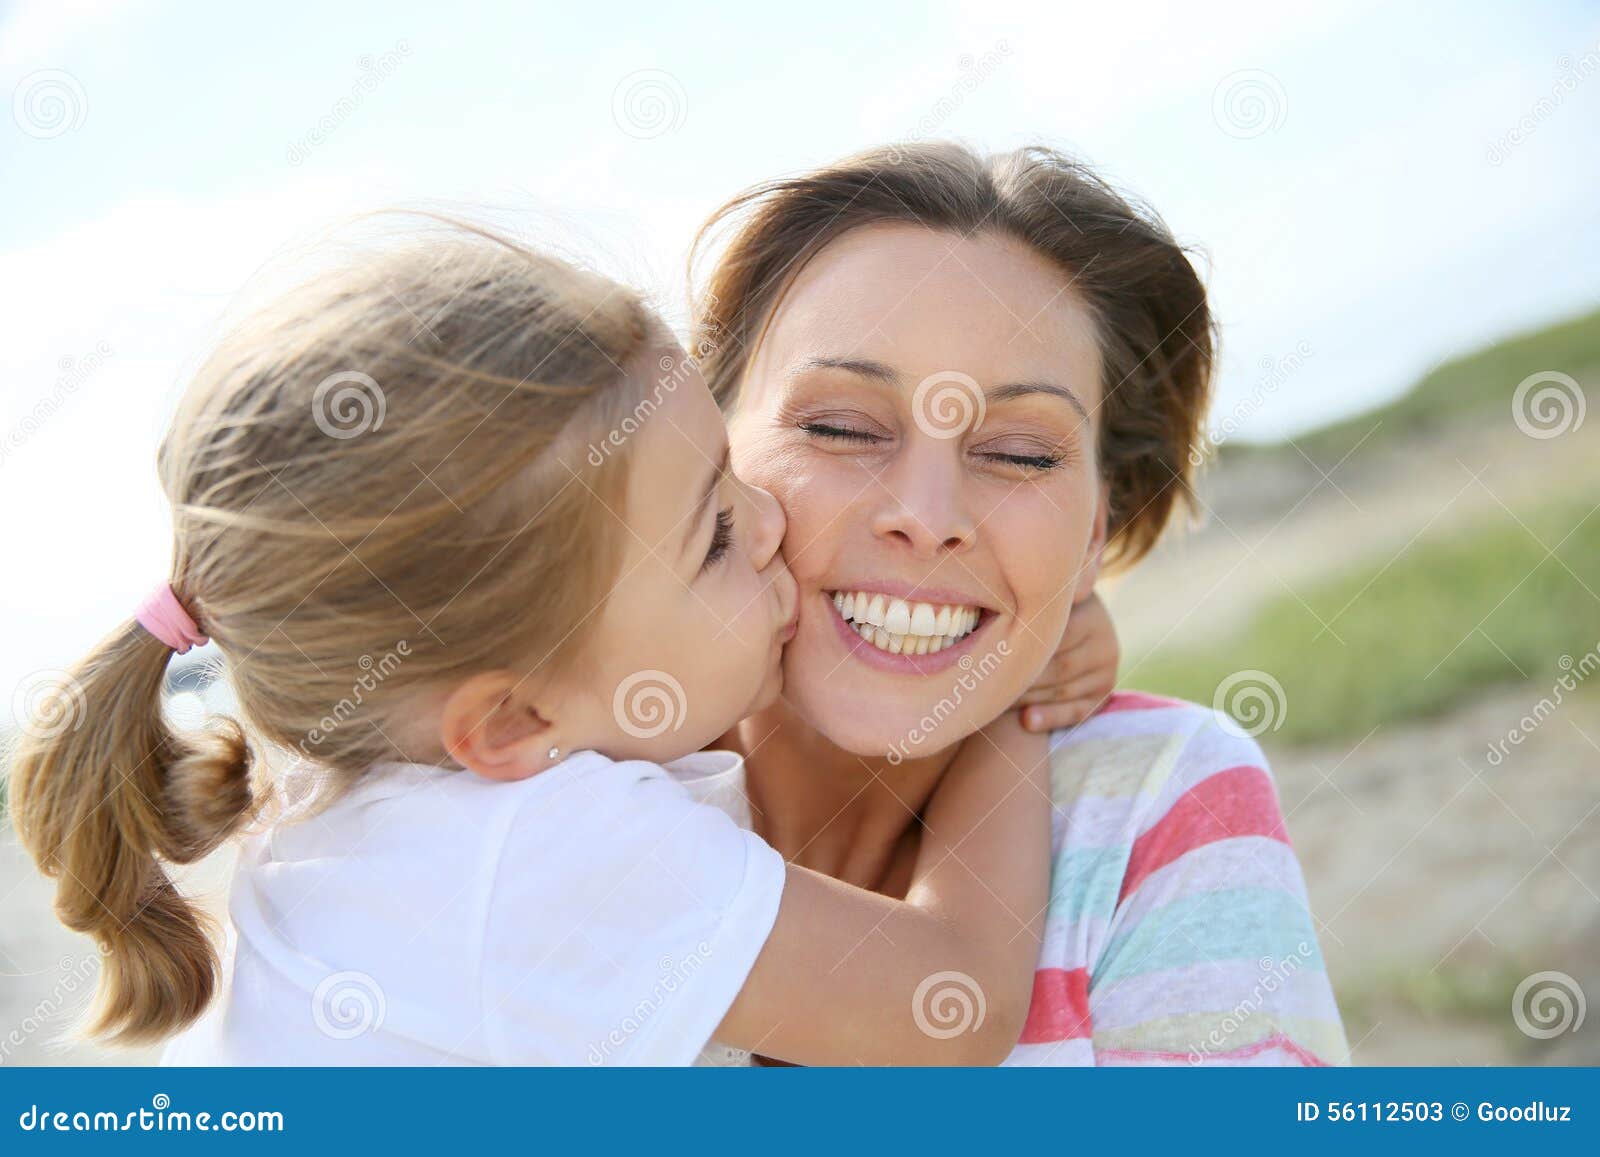 Лижут маме форум. Девочка целует маму. Девочка целует маму в щеку. Две девочки целуют папу. Мама целует папу в щеку.